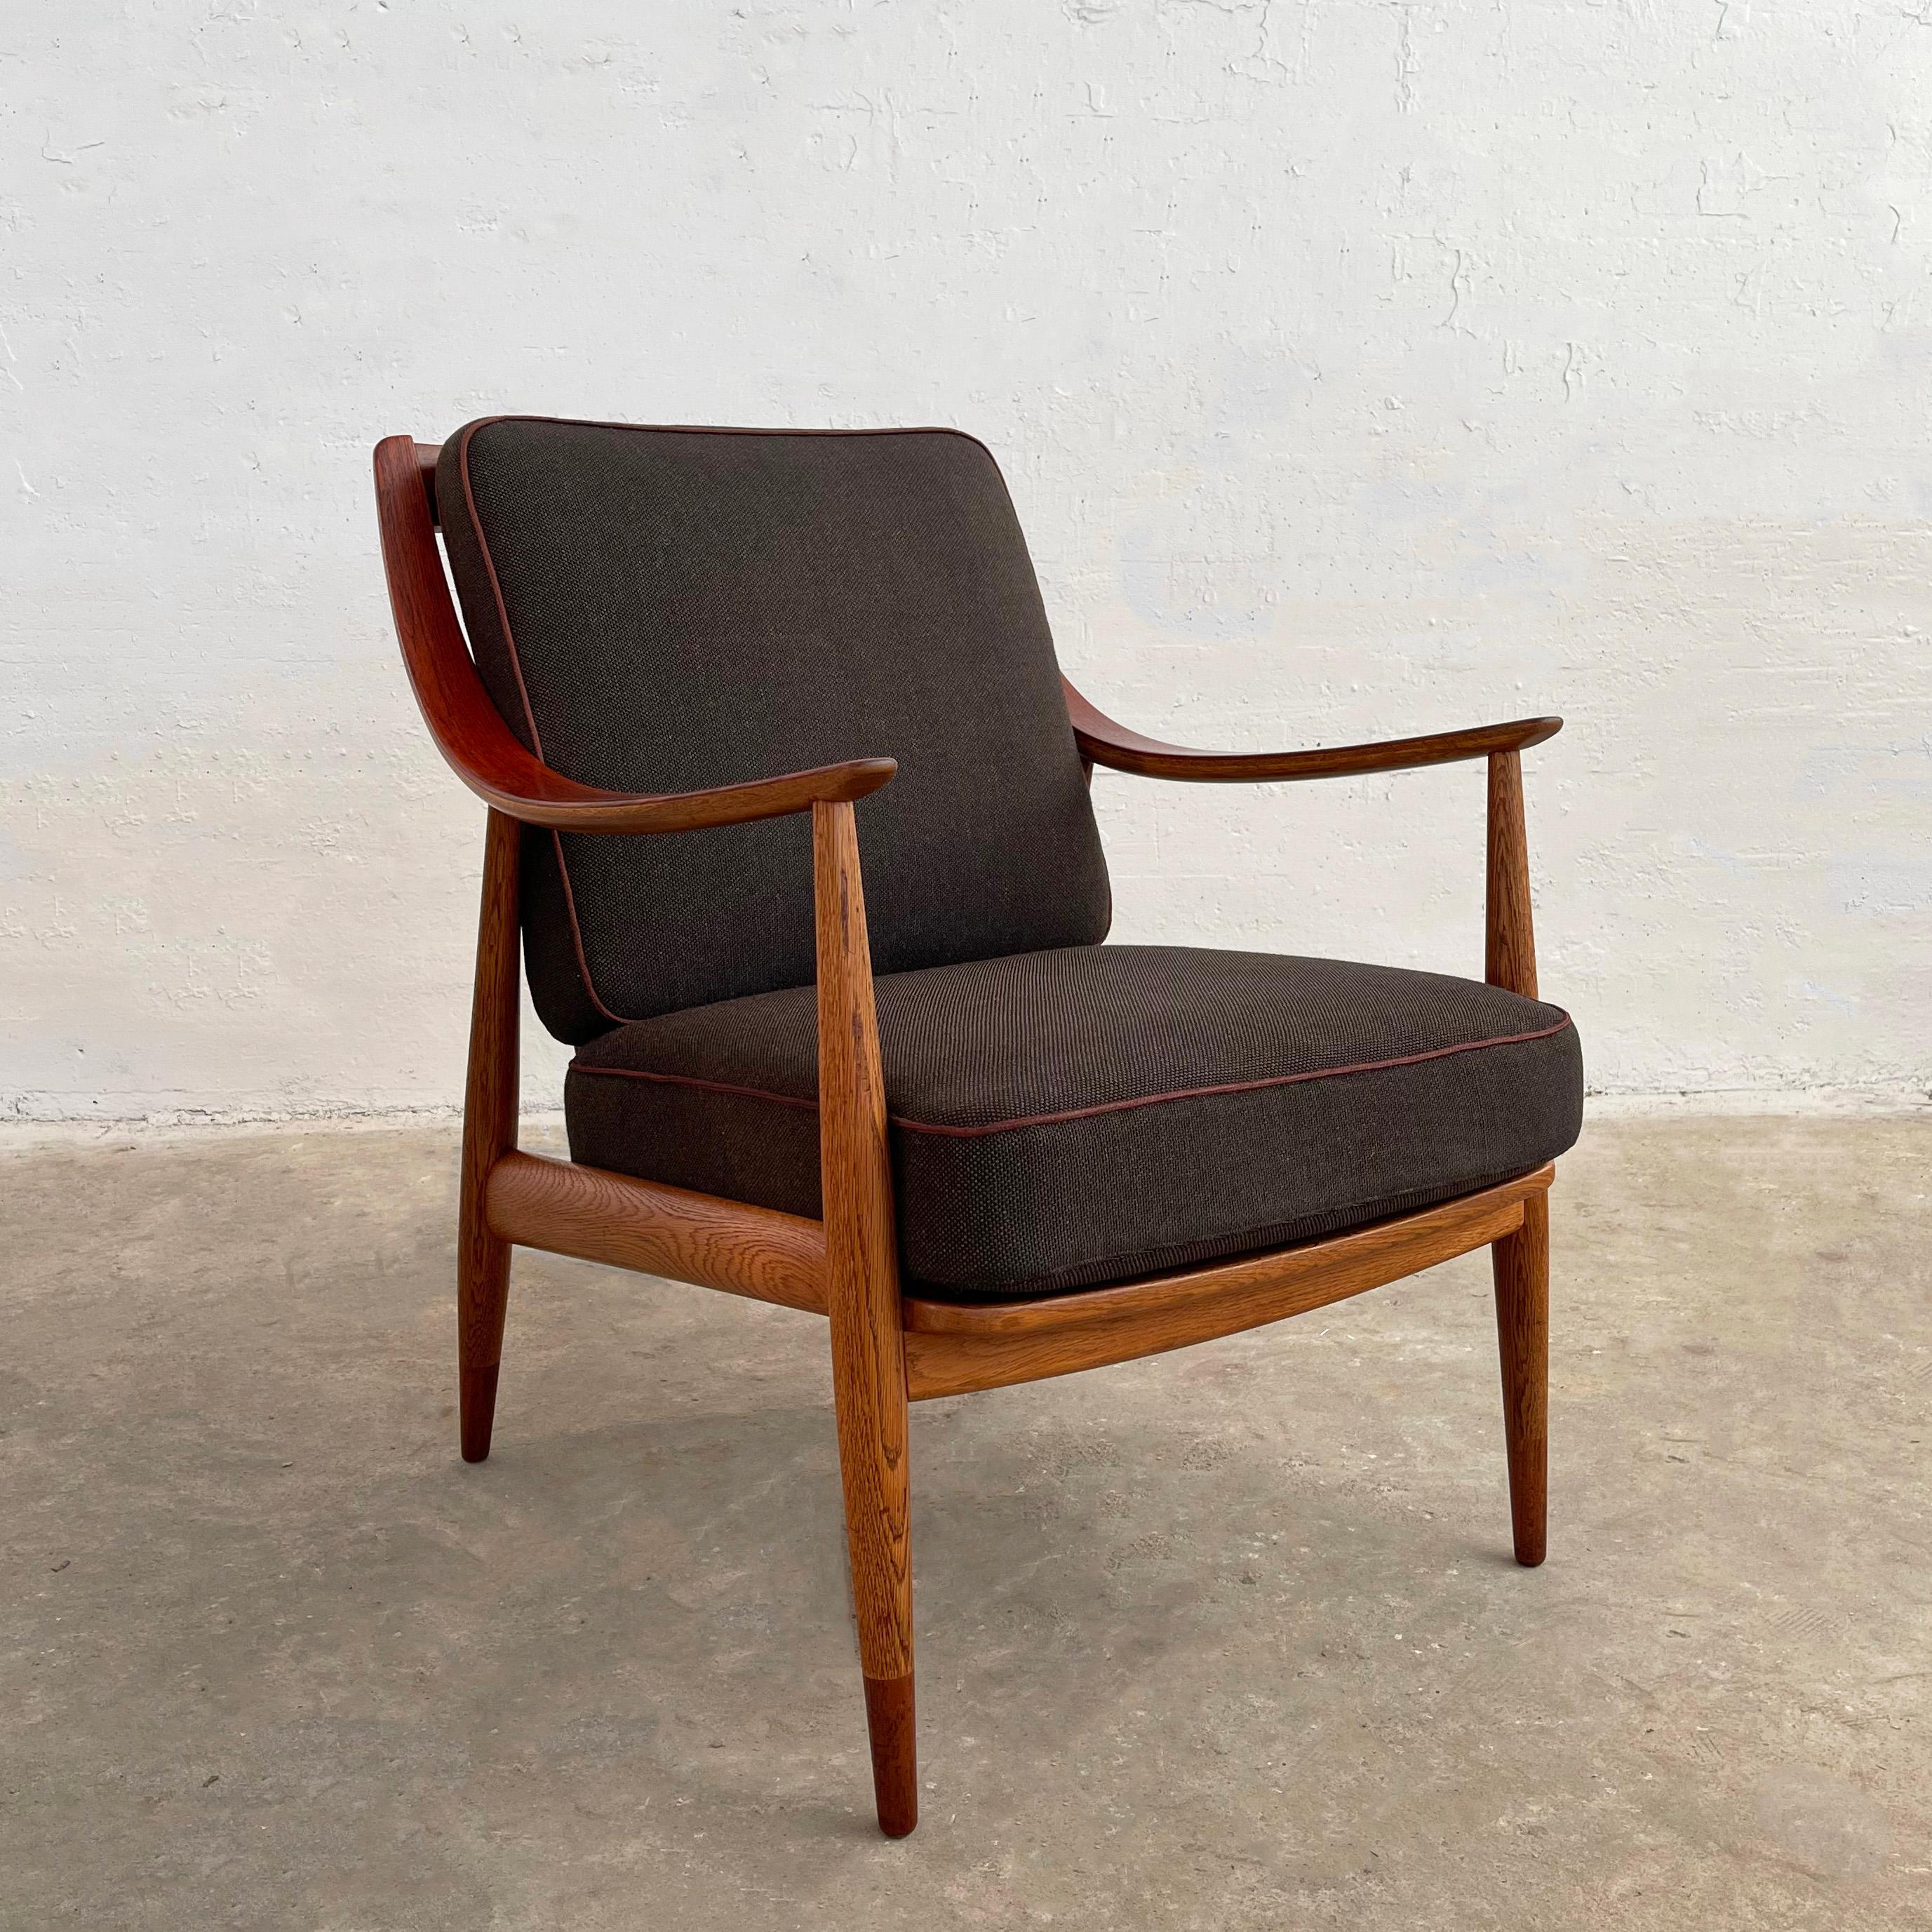 Moderne Scandinavian, le modèle FD145 est une chaise longue de Peter Hvidt et Orla Molgaard-Nielsen pour France & Daverkosen. Sa structure en chêne est rehaussée de teck le long des accoudoirs et de l'extrémité des pieds. Les coussins d'origine sont